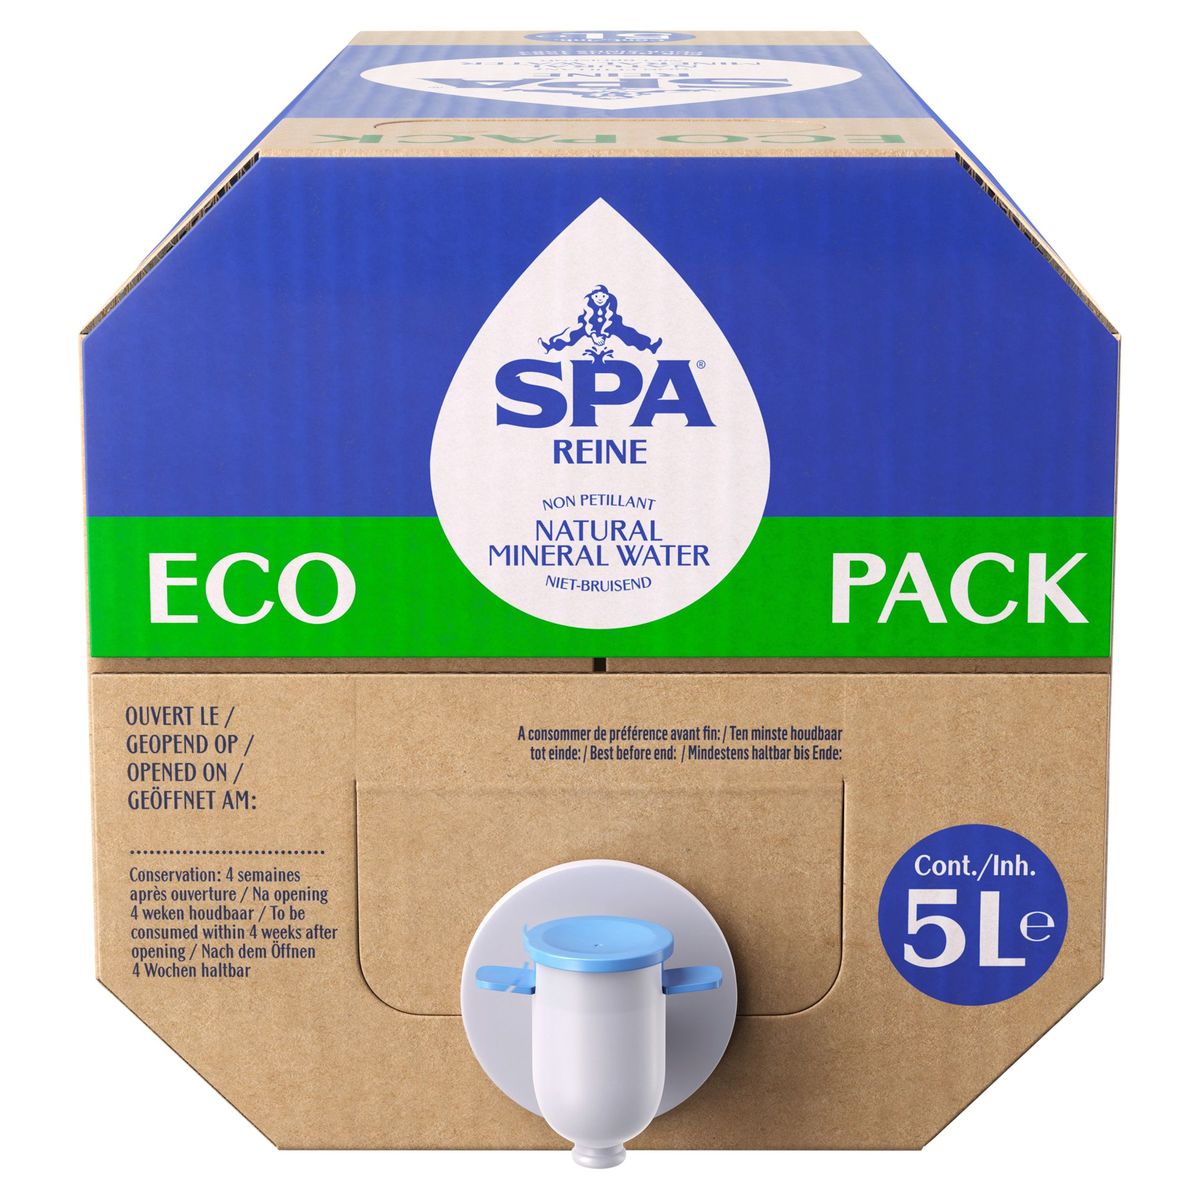 SPA REINE Eau Minérale Naturelle Eco Pack 5L